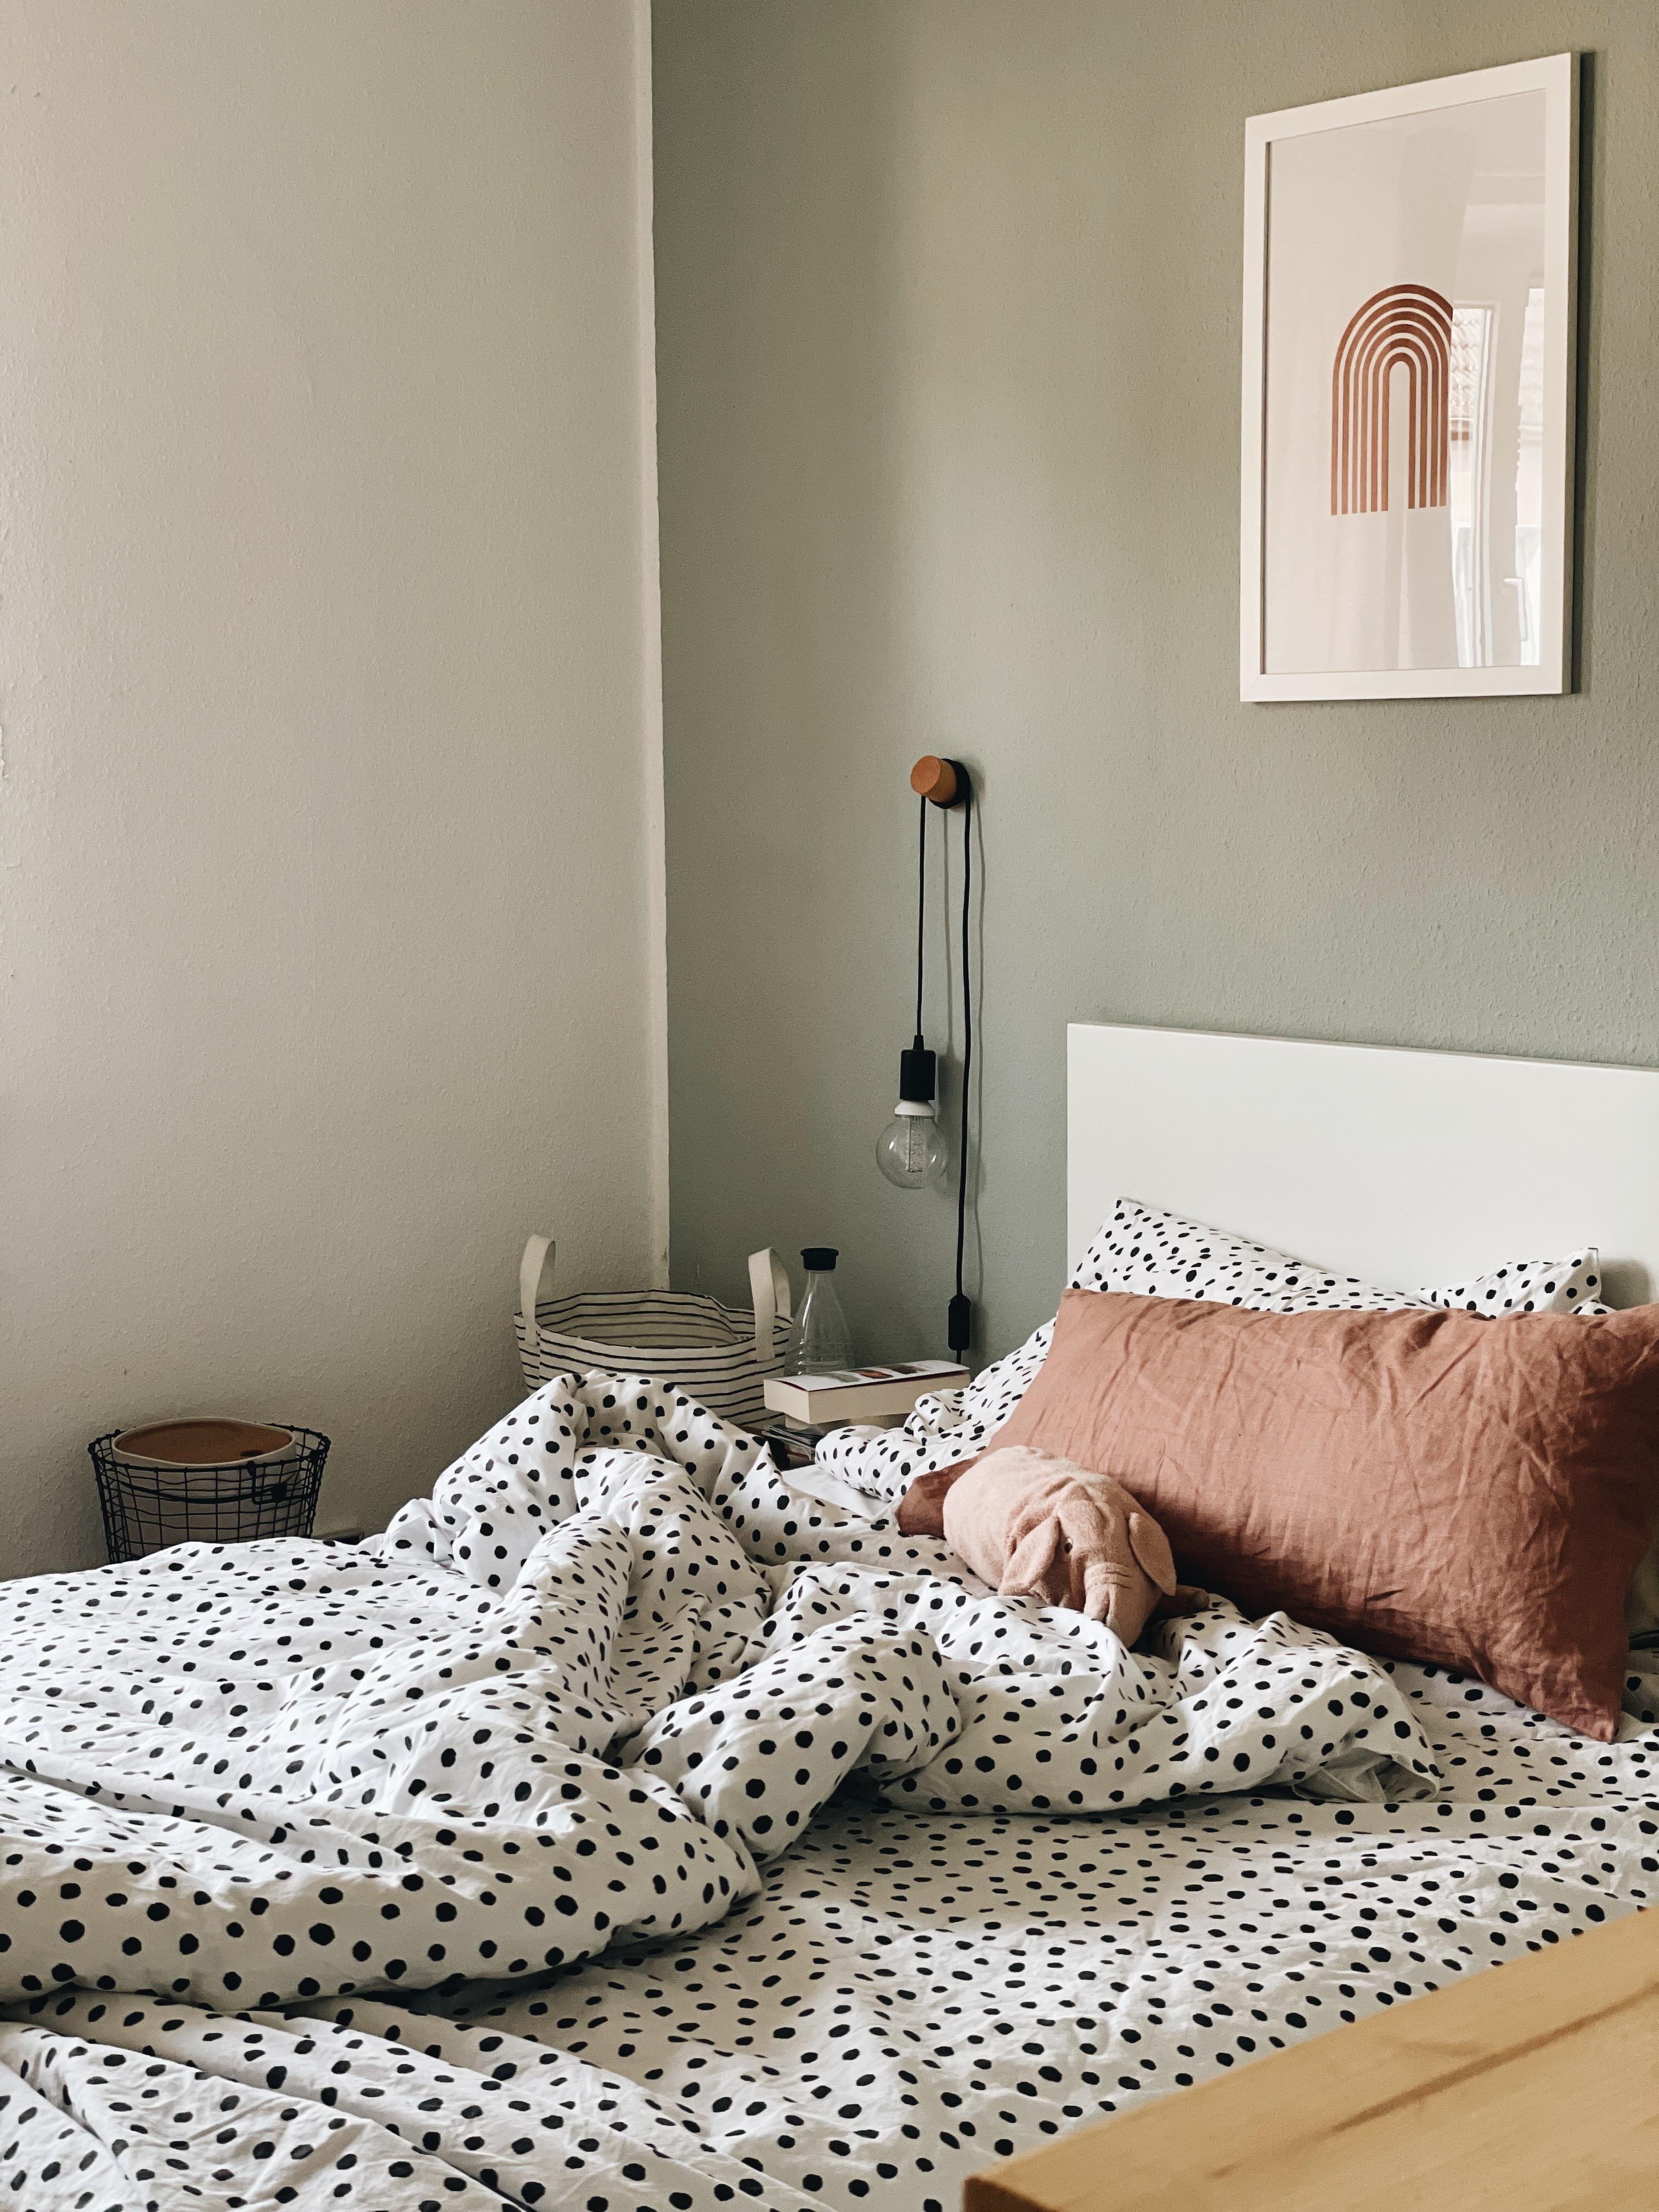 😴 #Livingchallenge #Schlafzimmer #Gewinnspiel #couchliebt #Inspiration #cozy 